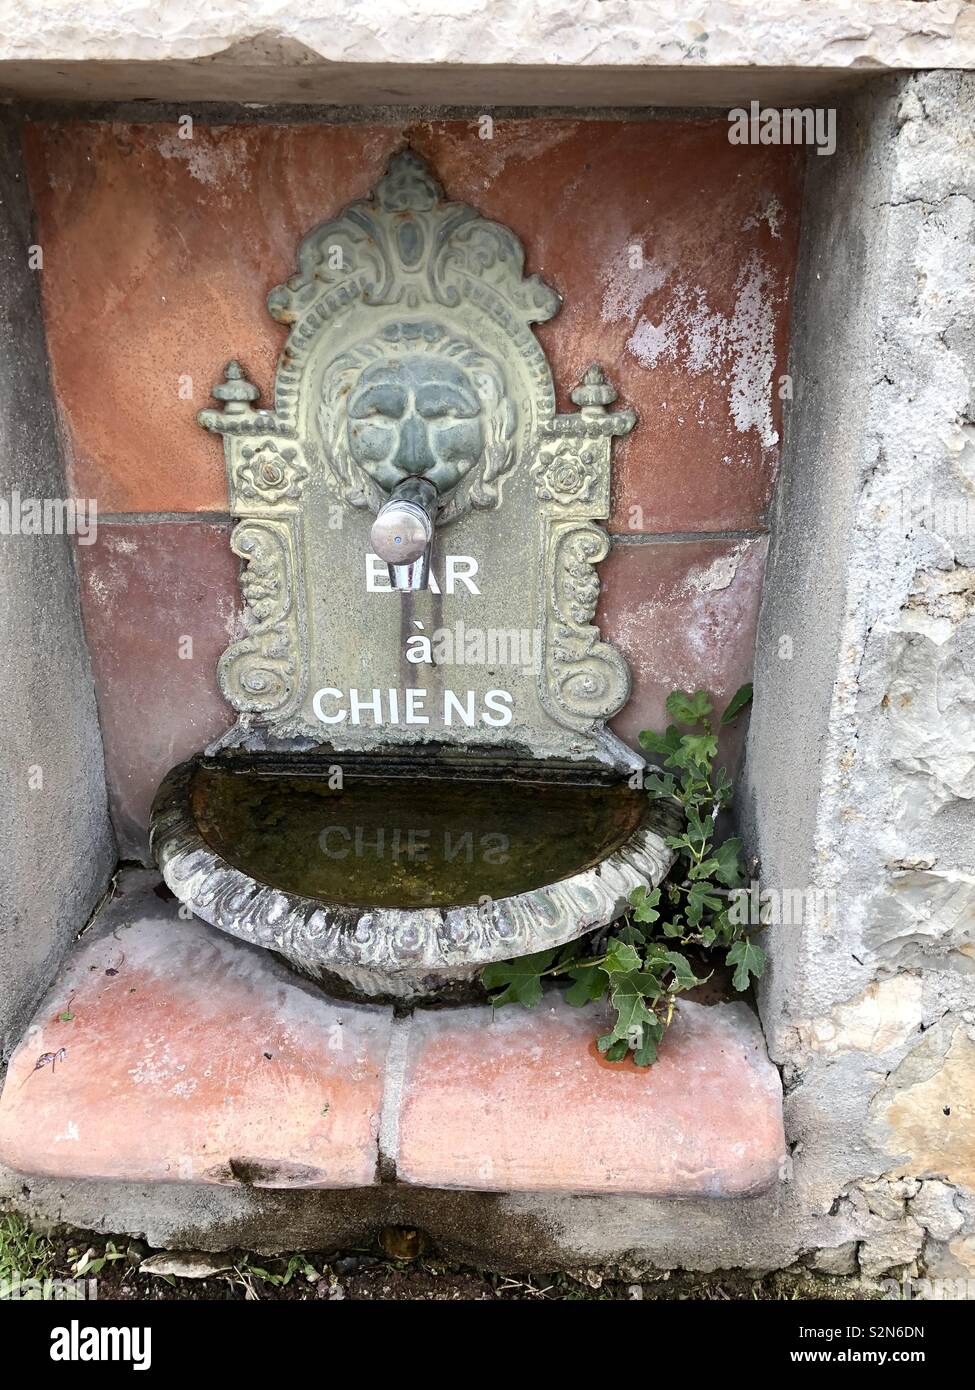 Ein dekoratives Viktorianische/Empire Stil öffentlichen Trinkbrunnen mit einem Löwen blicken, von der Küste von Cap Ferrat Frankreich mit der Aufschrift "Nicht für Hunde'' Bar eine Chiens' Stockfoto